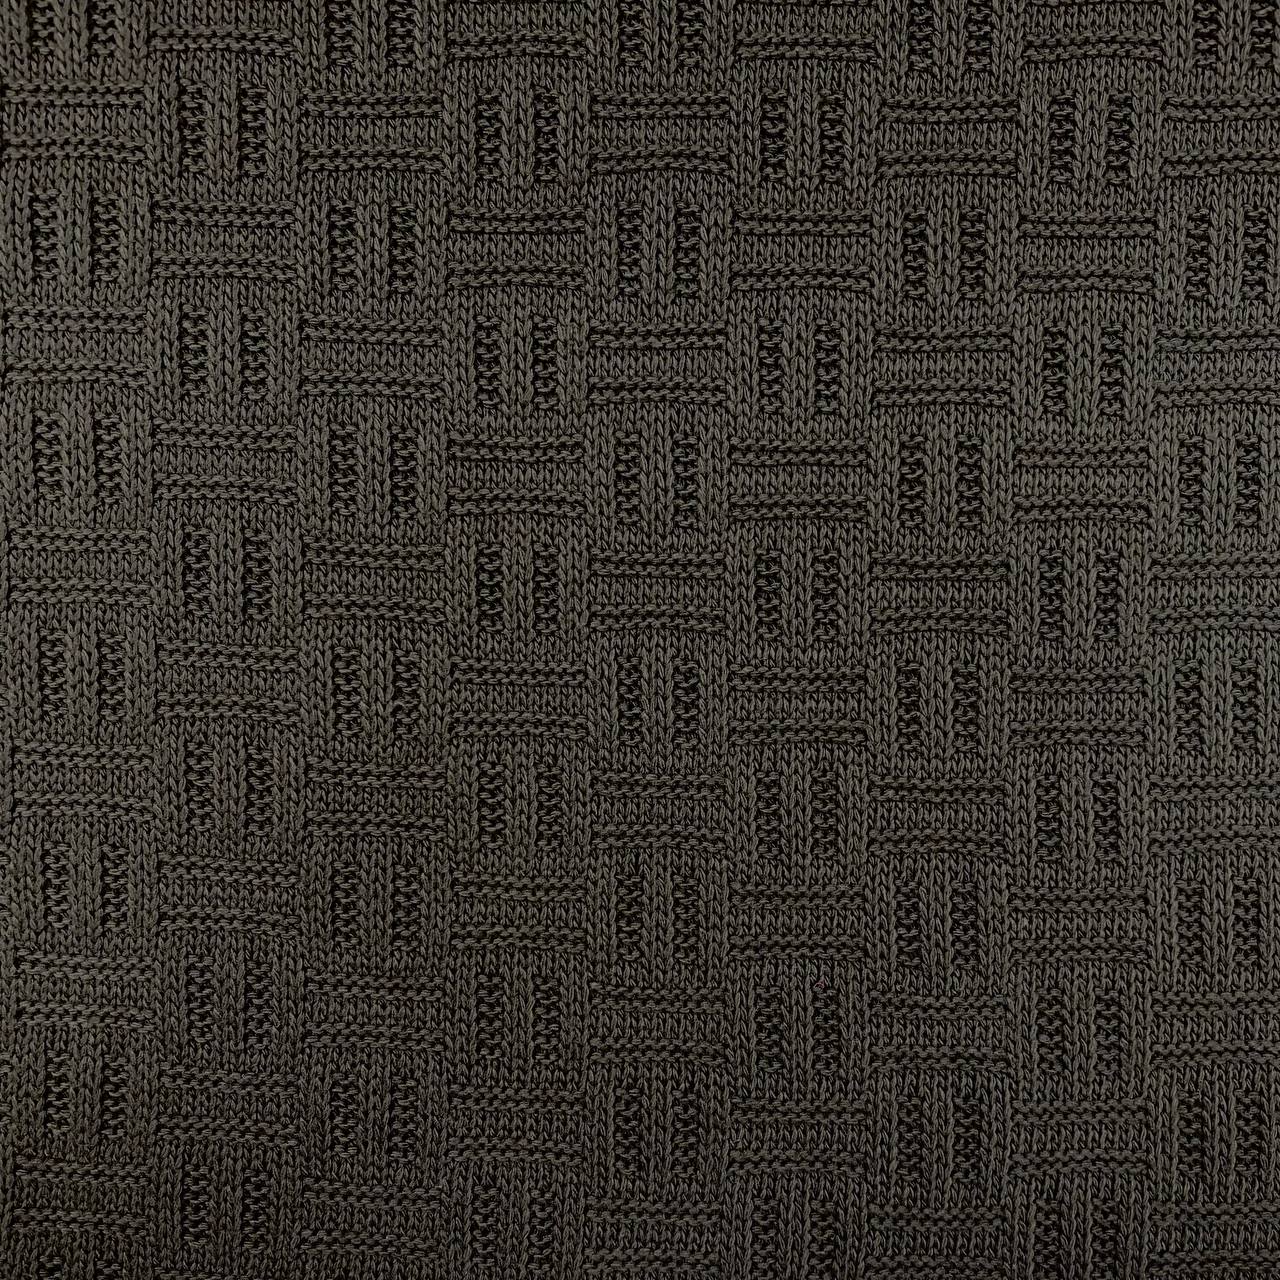 Strickstoff, Baumwolle, schwarz. Art. 5184/69